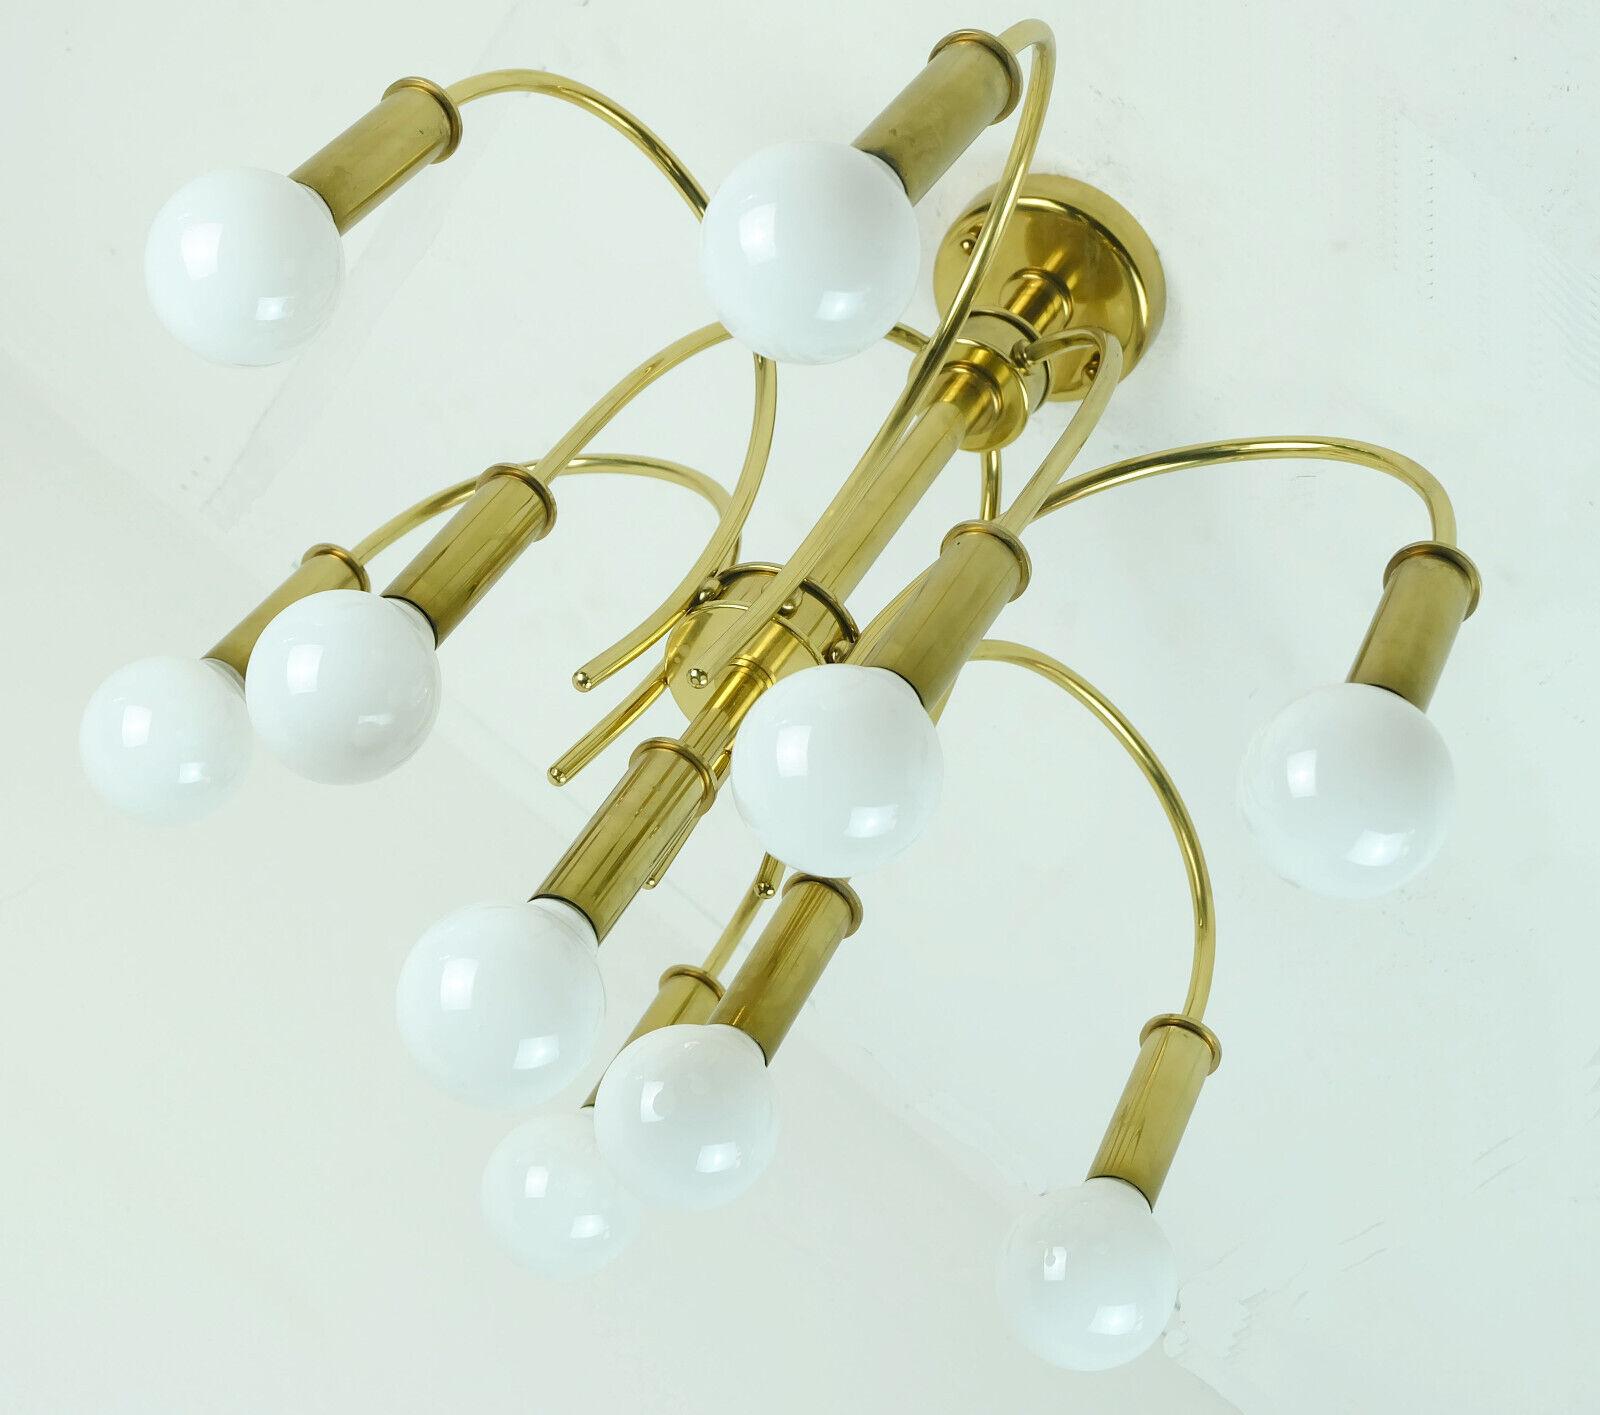 1970s sputnik brass CEILING LIGHT 10-light chandelier schroeder & co. For Sale 3